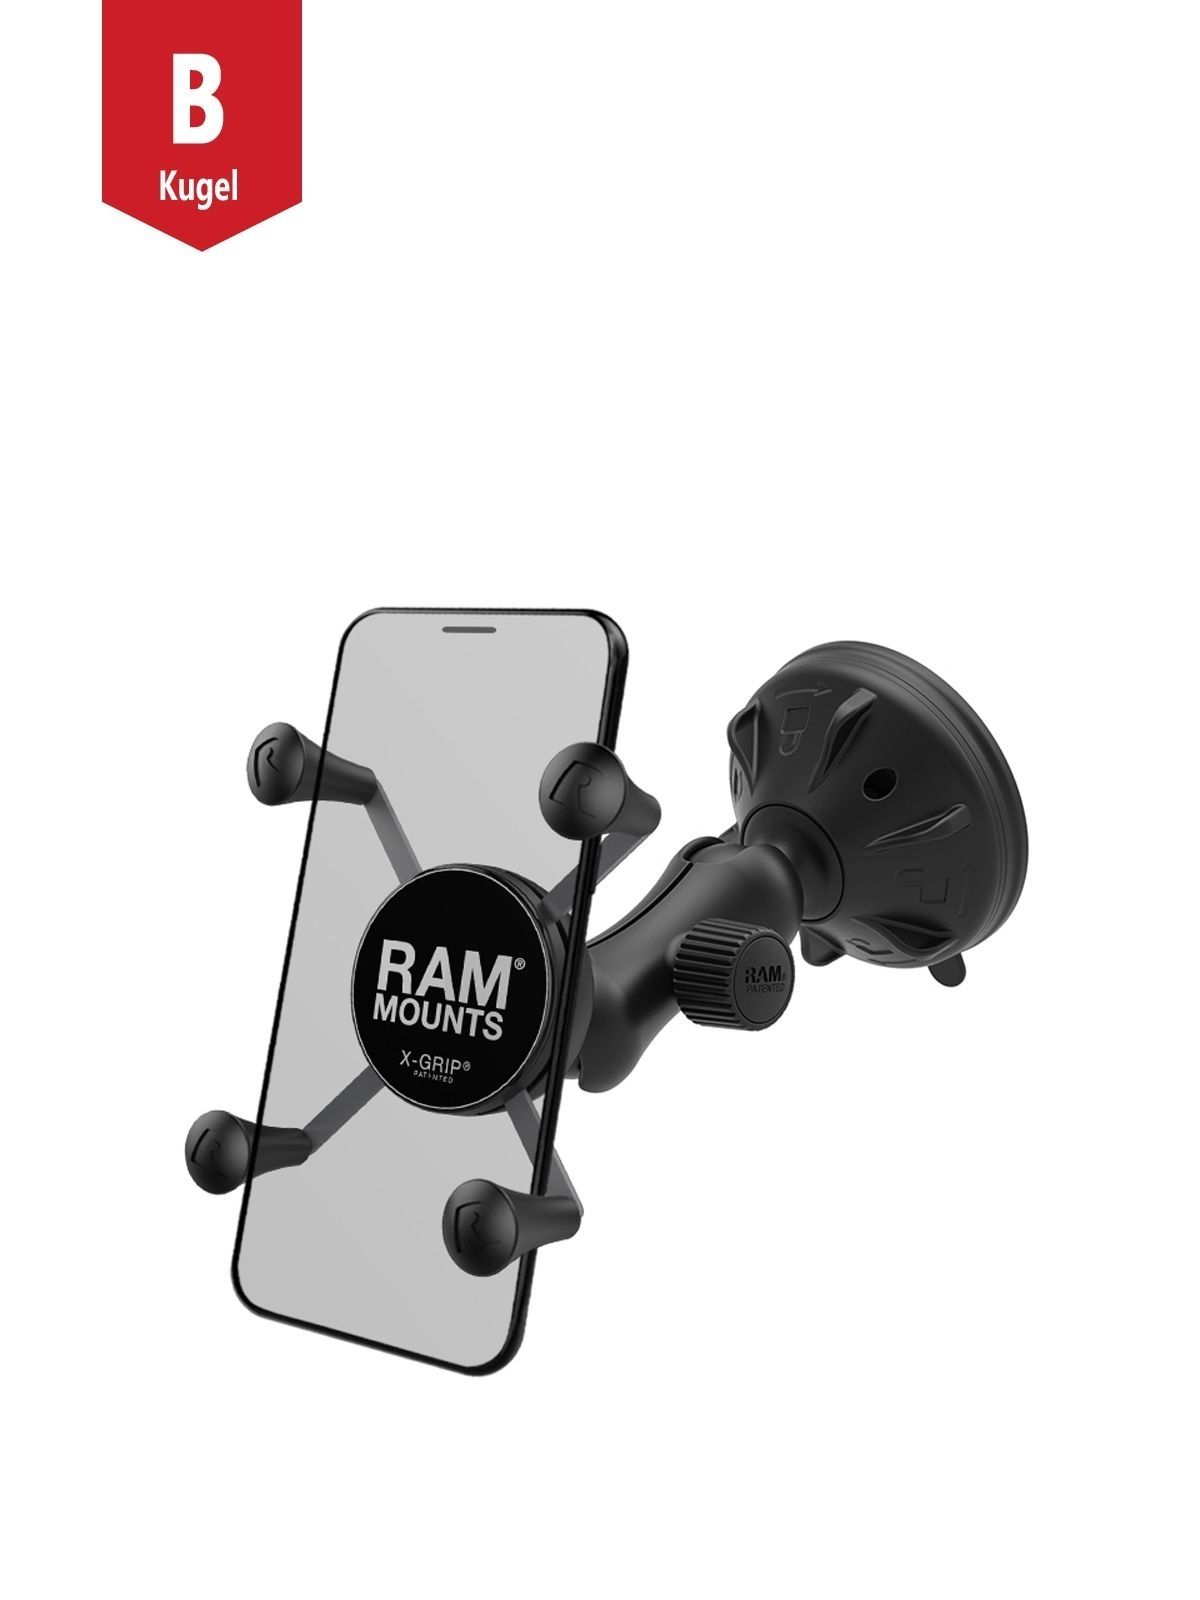 RAM Mounts Verbundstoff Saugfuss-Halterung mit X-Grip Halteklammer für Smartphones bis 82,6 mm Breite - B-Kugel (1 Zoll), kurzer Verbindungsarm (ca. 5